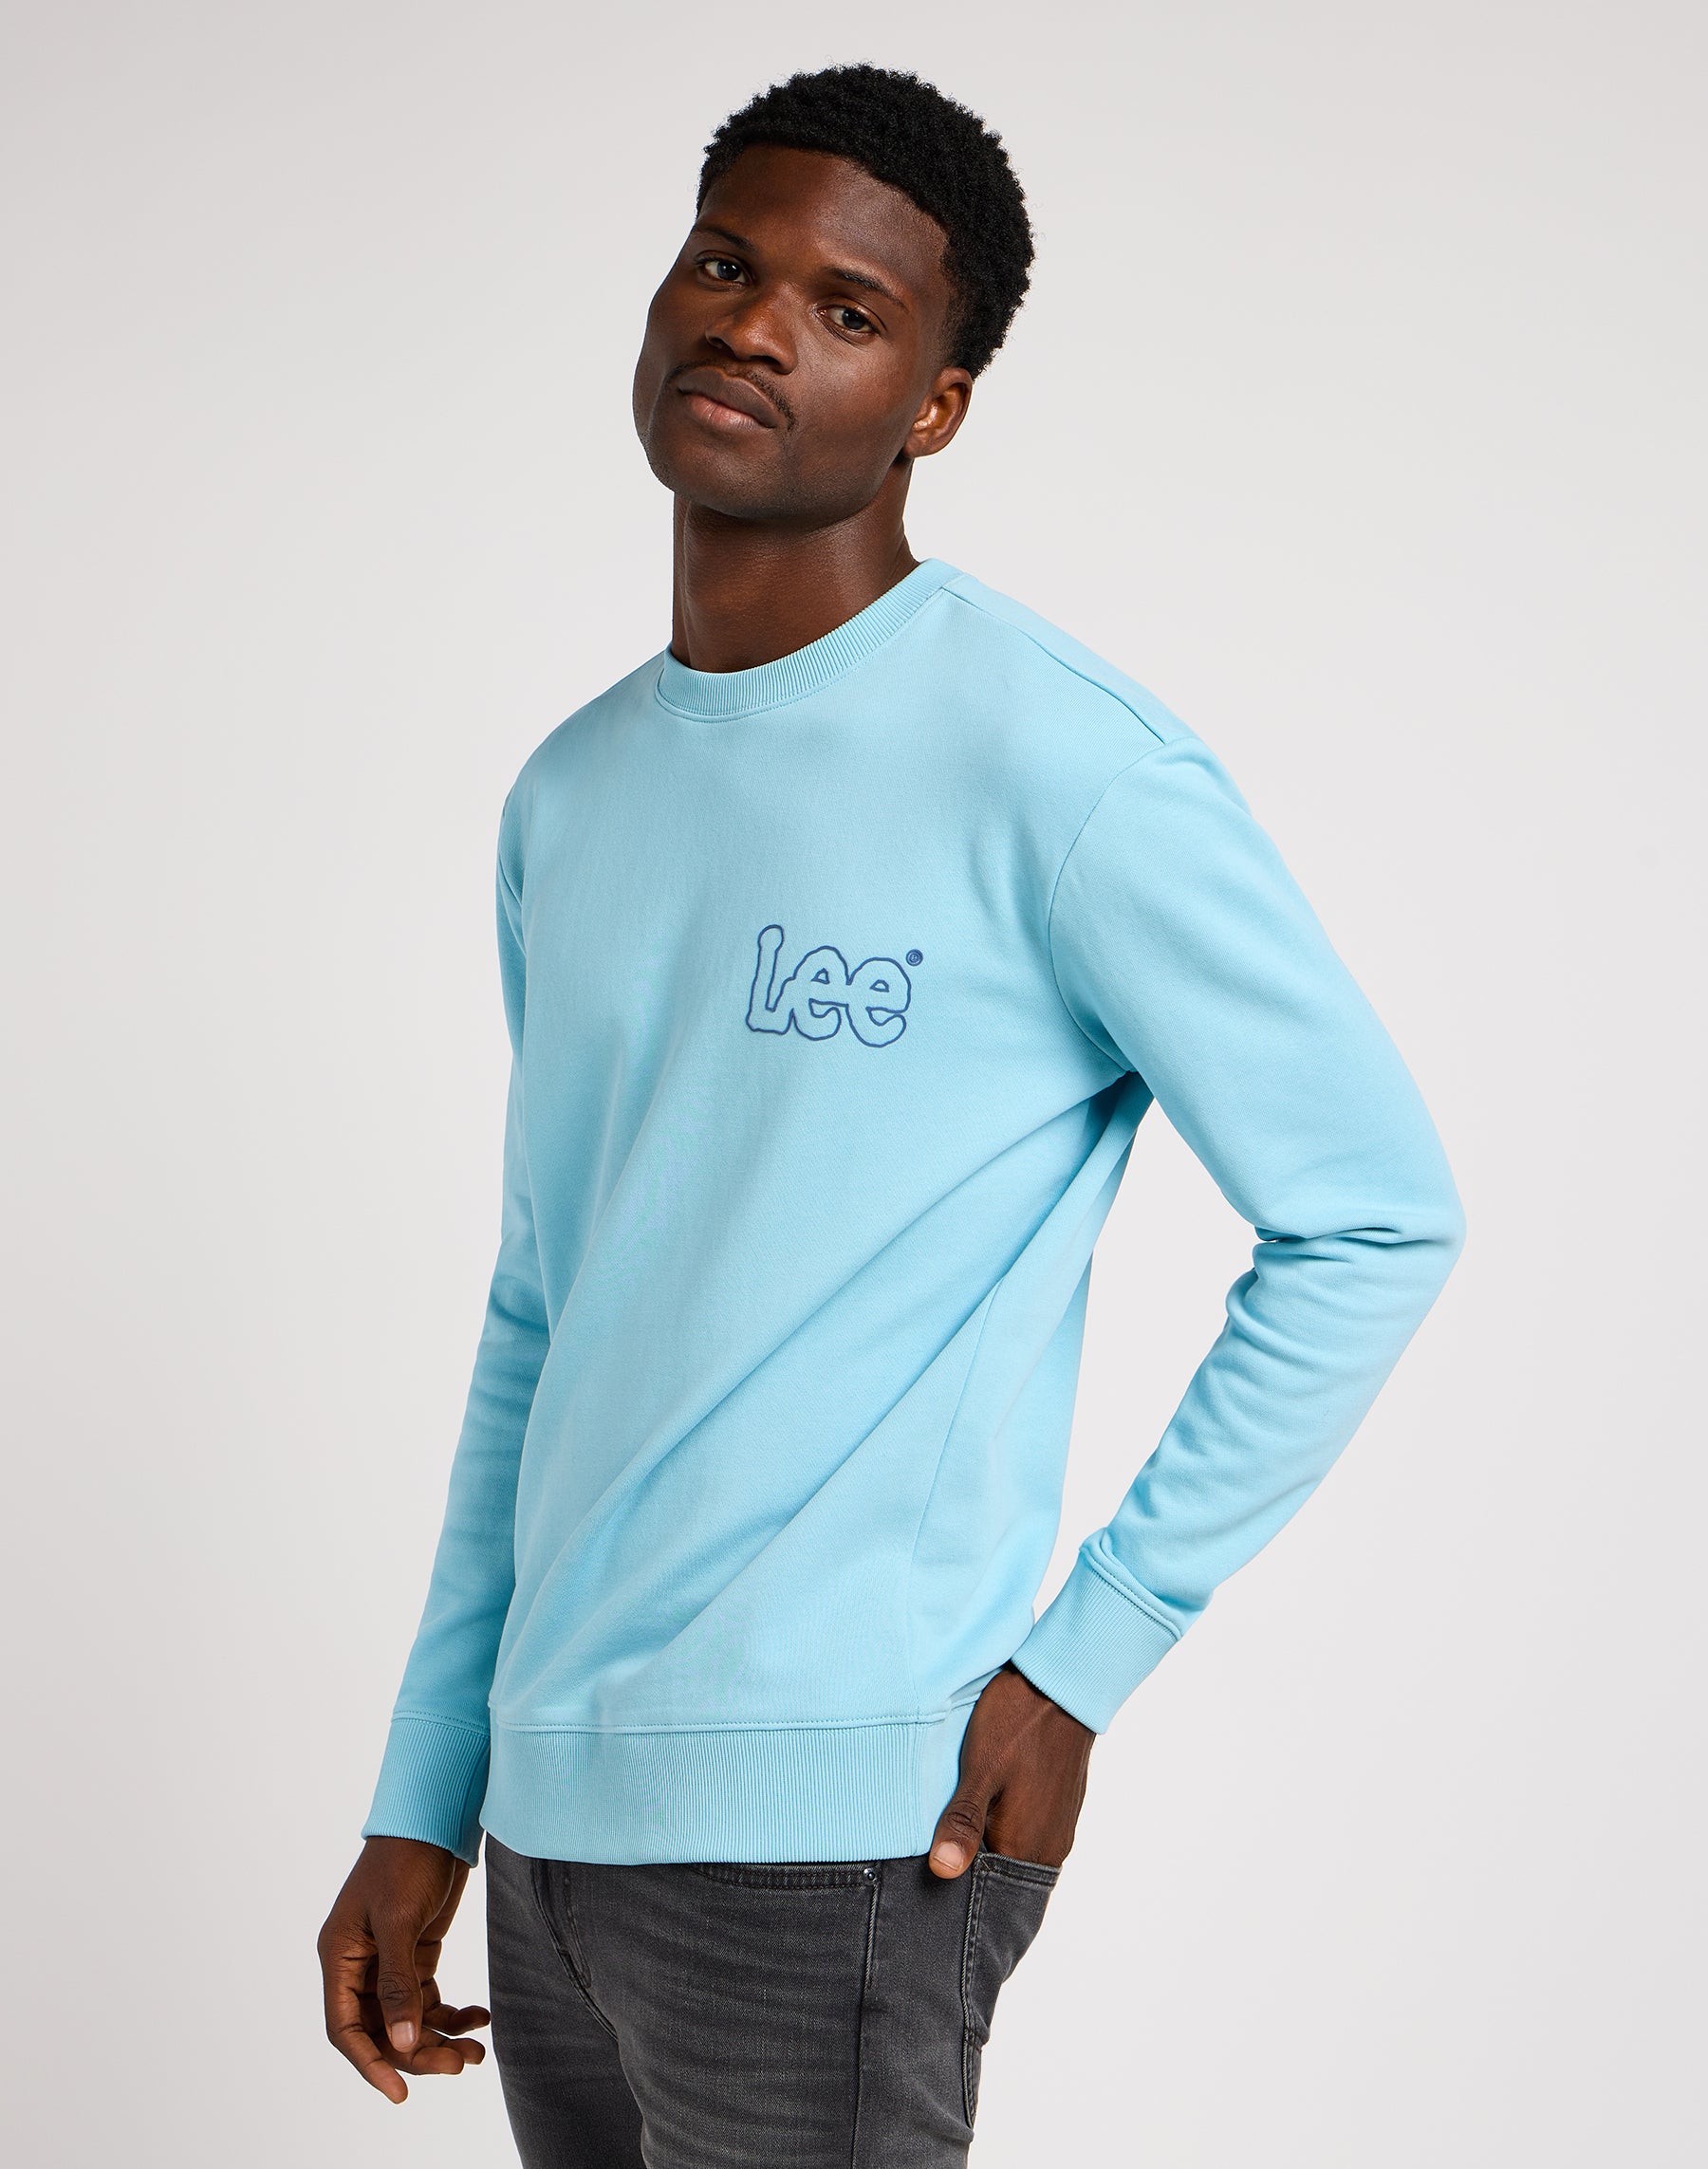 Wobbly Lee Sweater in Preppy Blue Sweatshirts Lee   